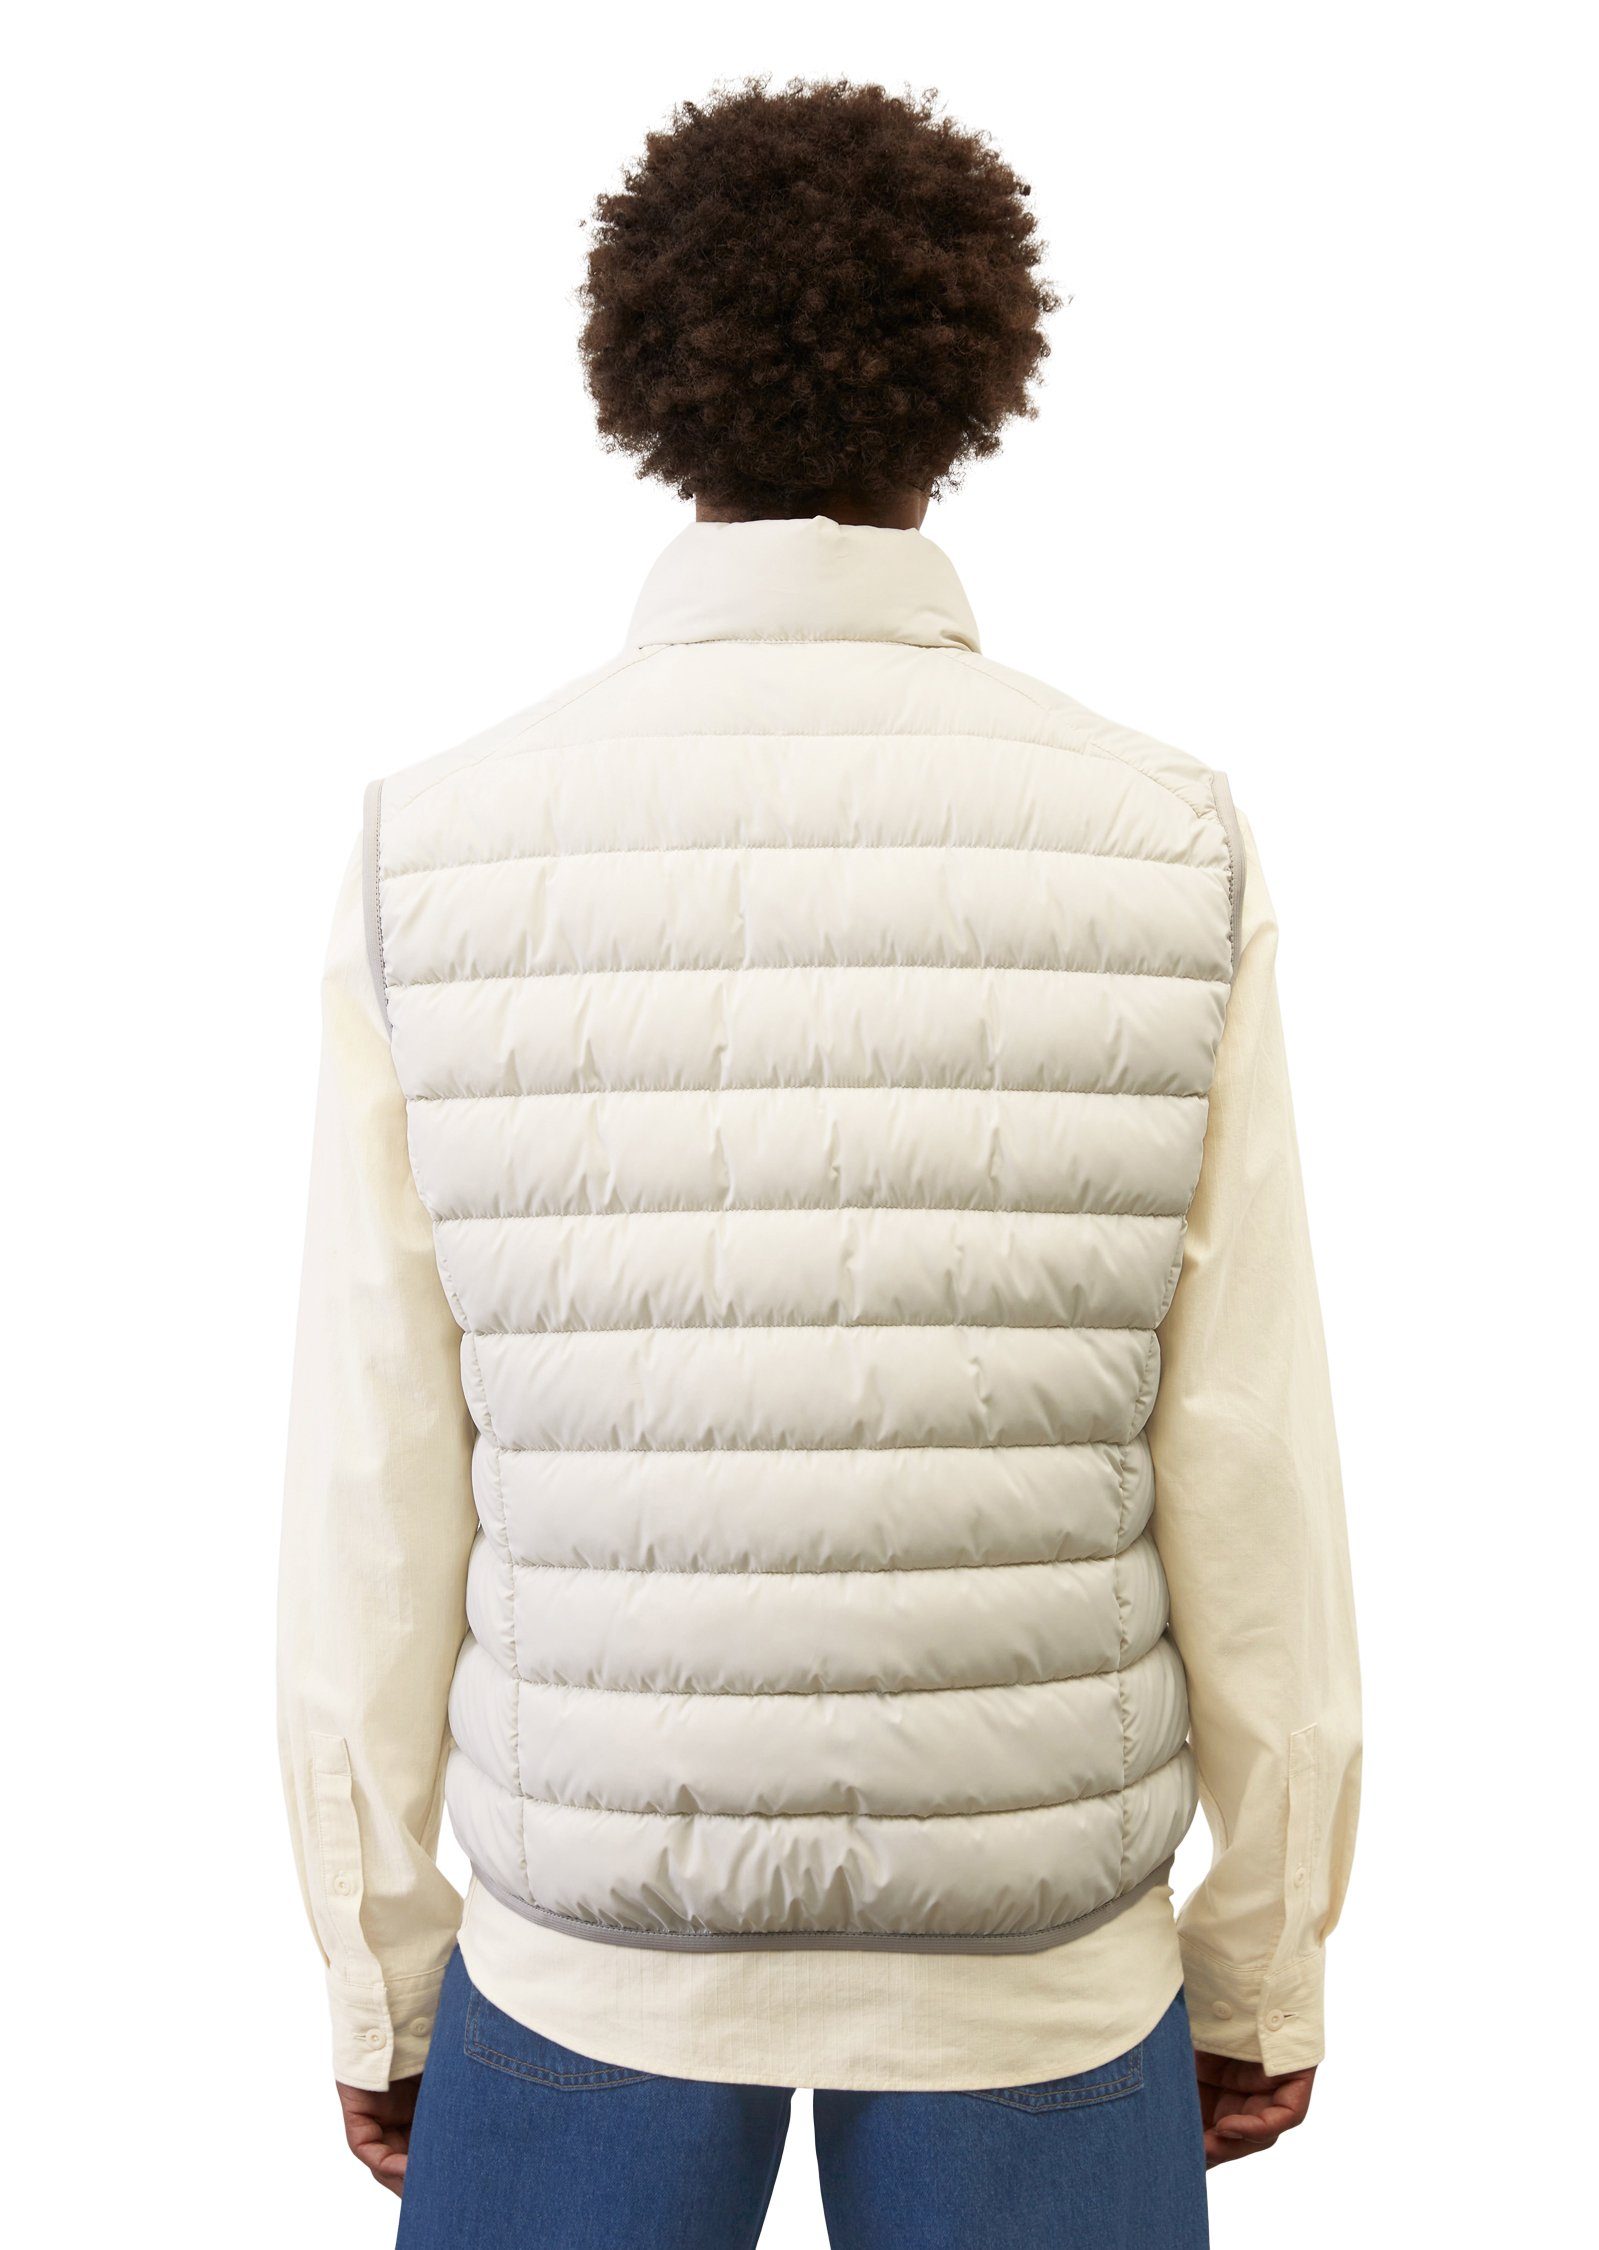 Marc O'Polo wasserabweisender Oberfläche white collar mit sdnd, Steppweste linen stand-up Vest